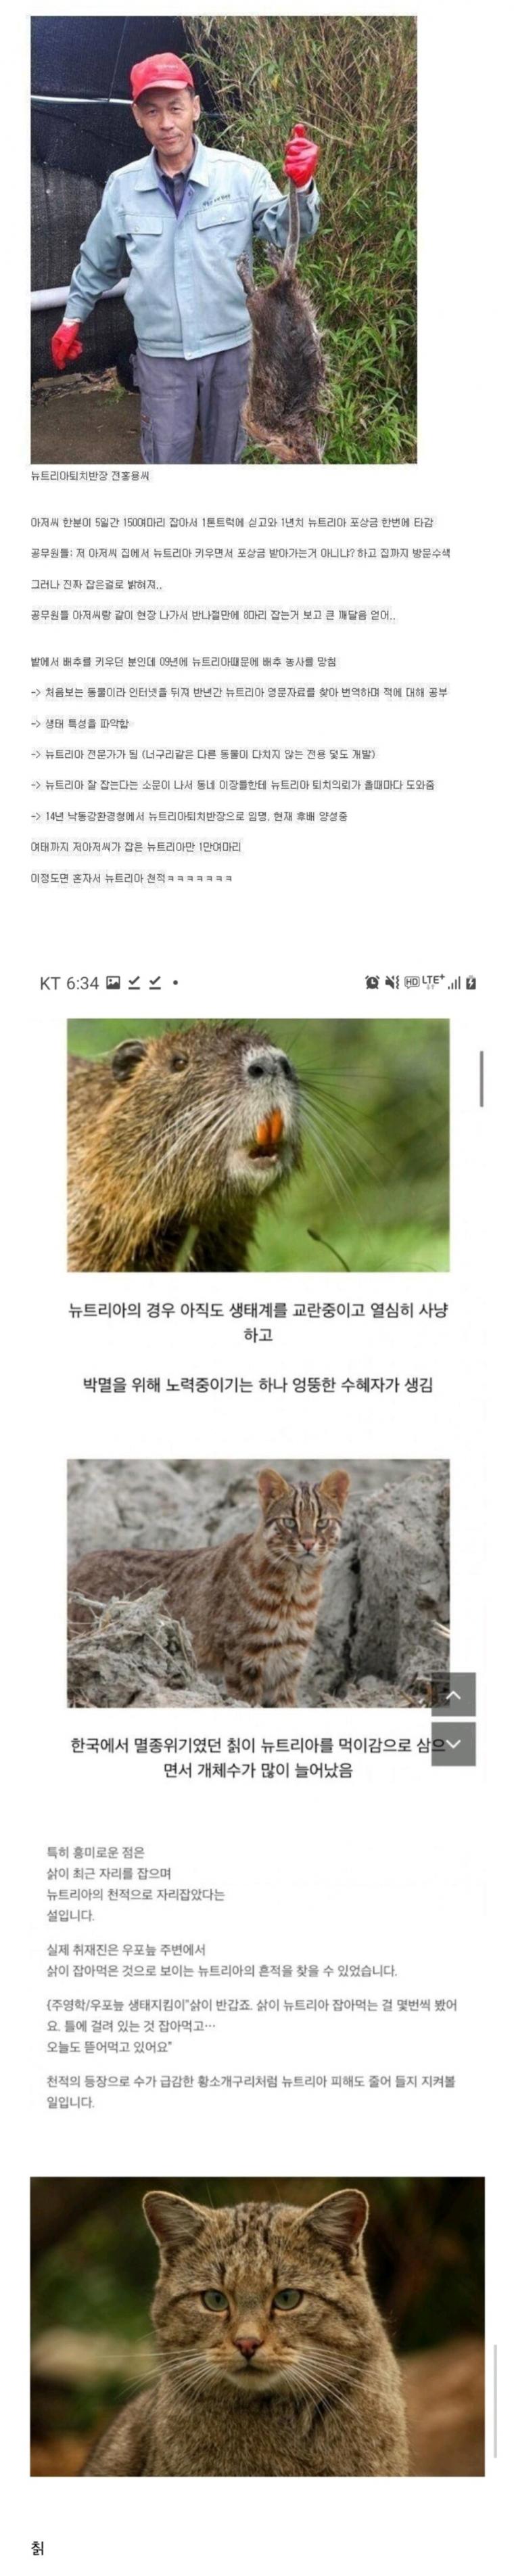 12 요즘 한국에서 멸종될지도 모르는 생물.jpg